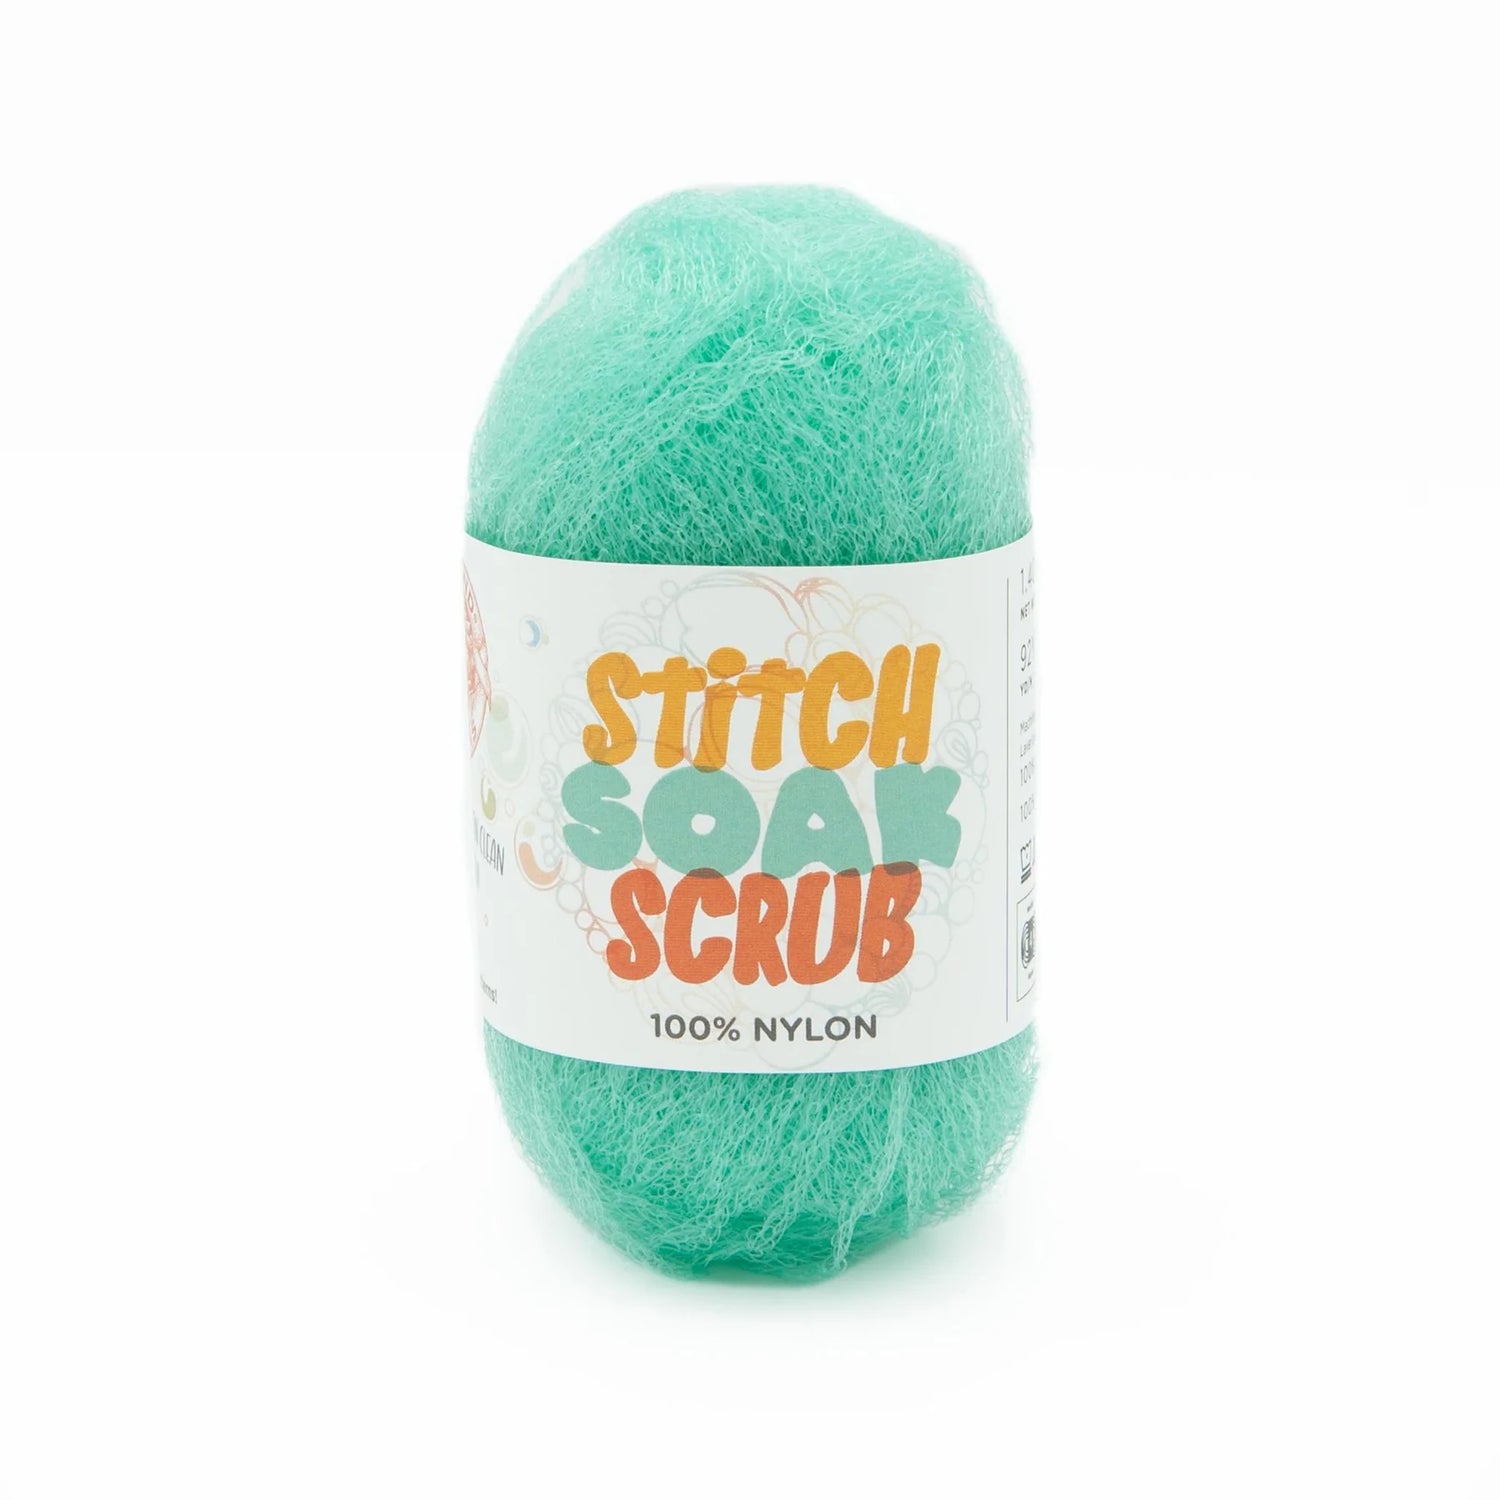 Lion Brand Stitch soak Scrub yarn